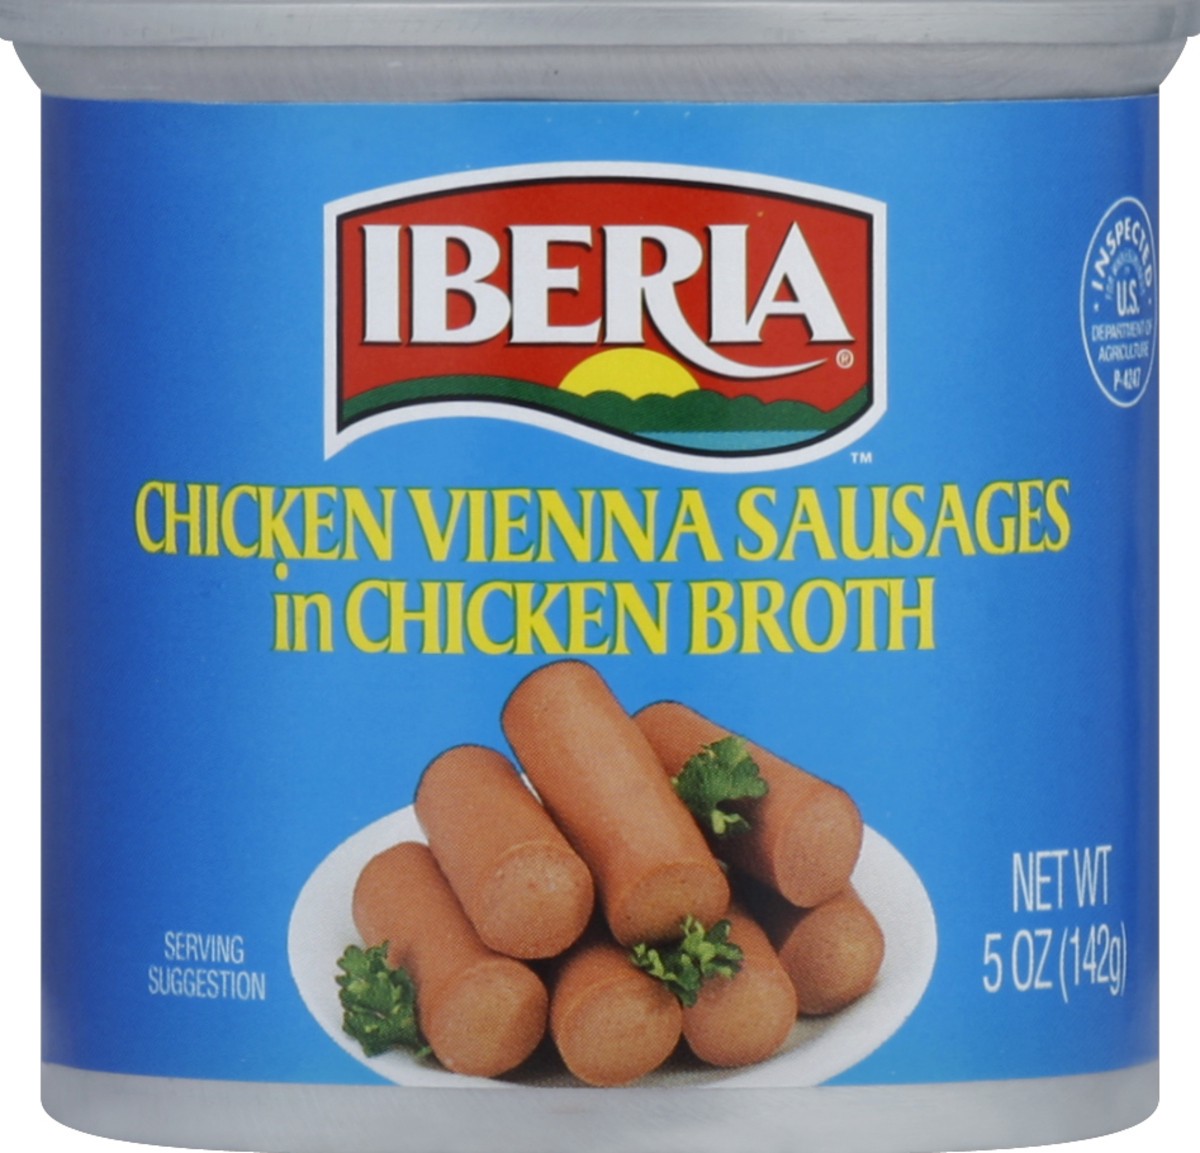 slide 2 of 2, Iberia Chicken Vienna Sausages in Chicken Broth - 5oz, 5 oz